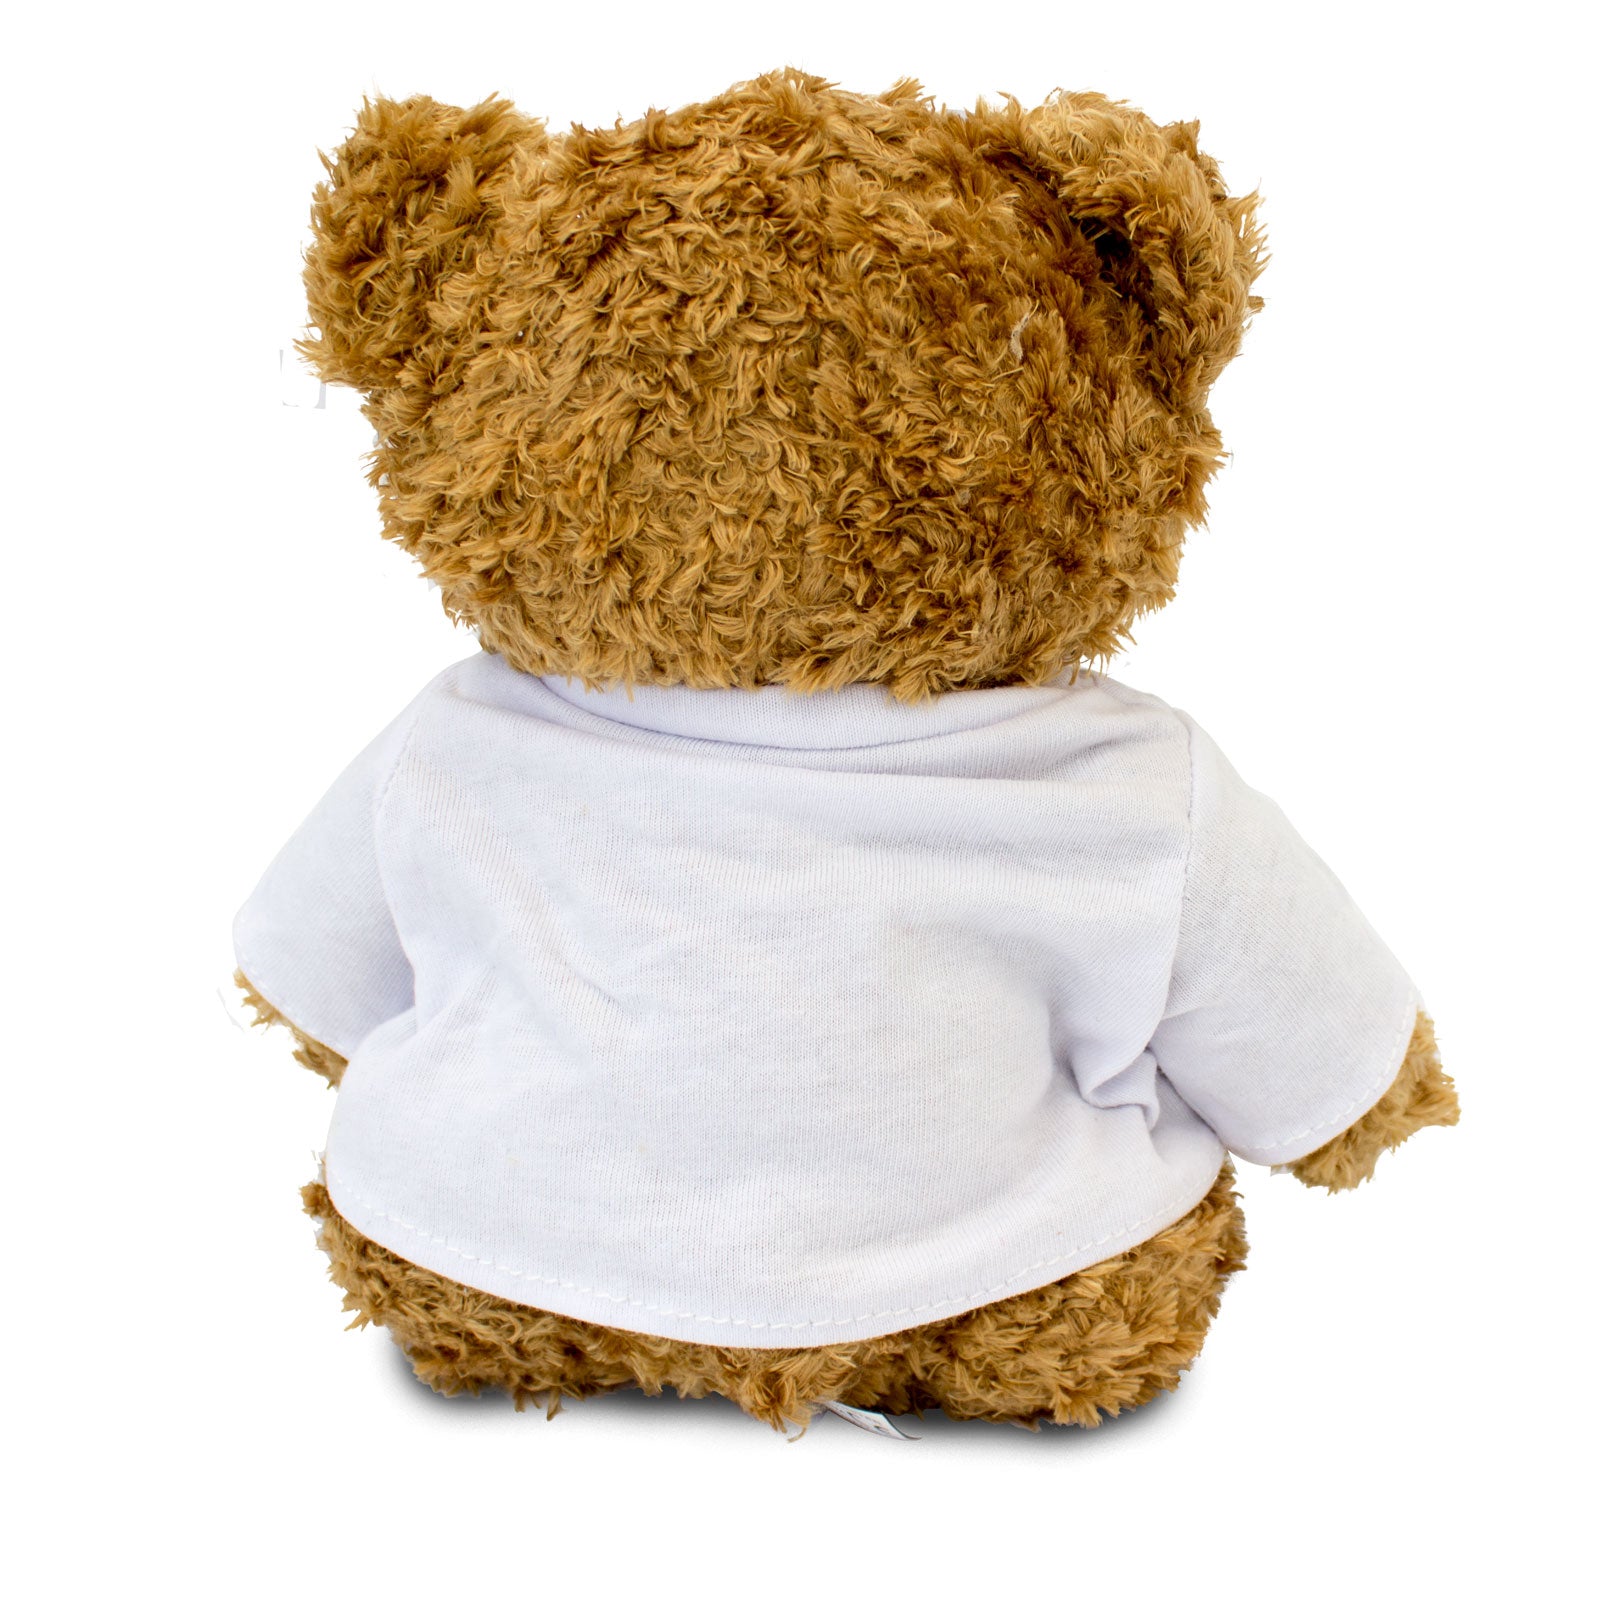 I Love Zumba - Teddy Bear